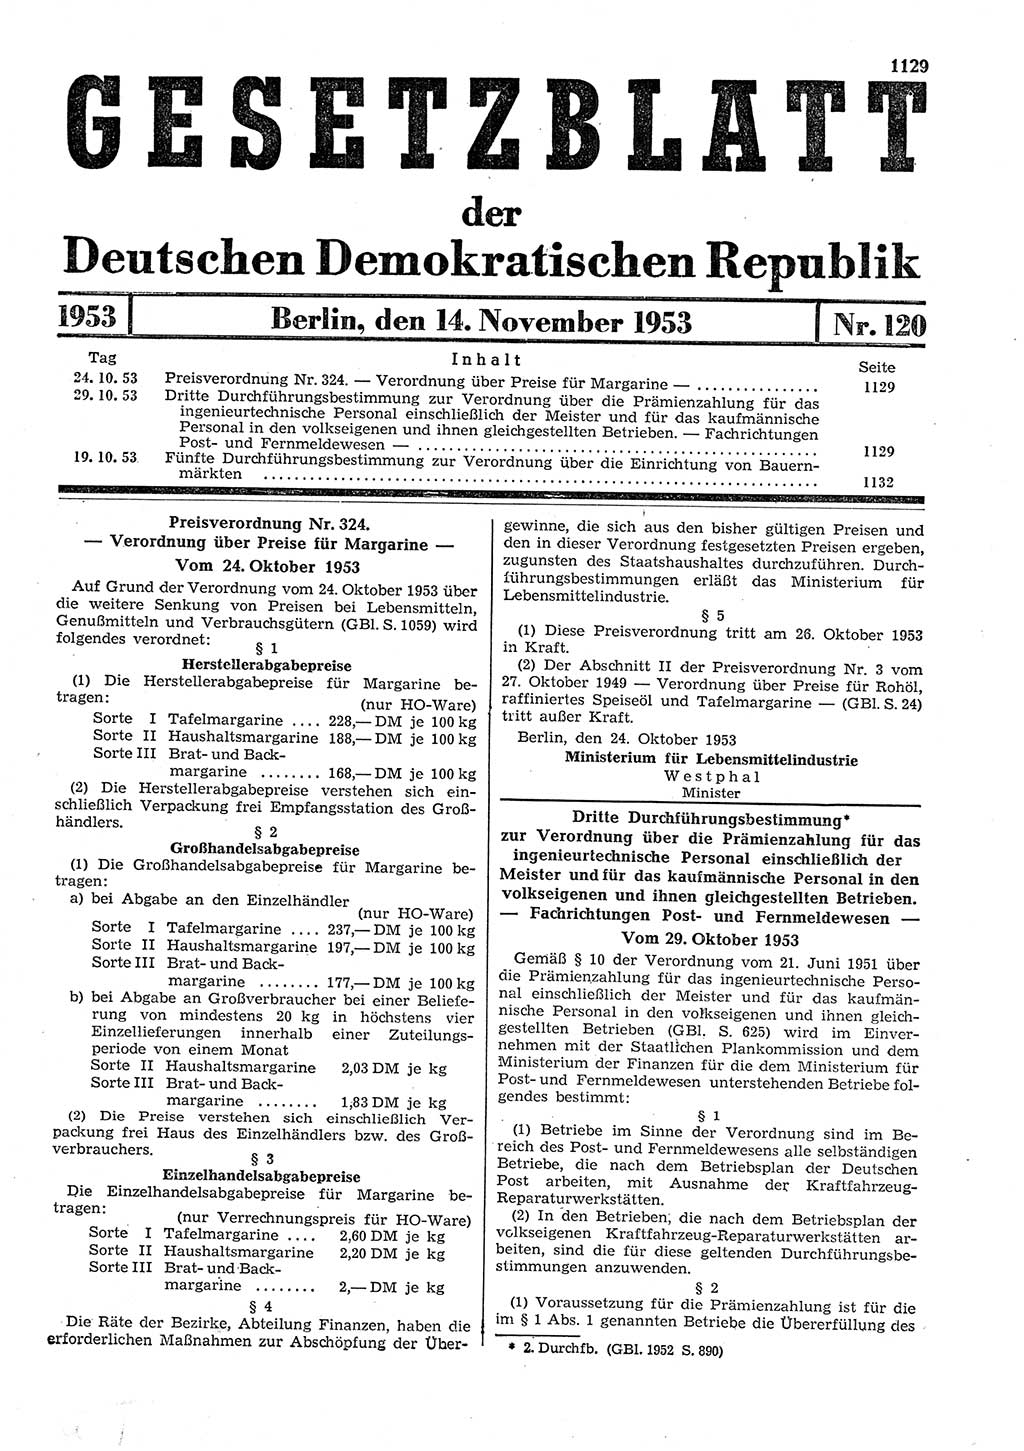 Gesetzblatt (GBl.) der Deutschen Demokratischen Republik (DDR) 1953, Seite 1129 (GBl. DDR 1953, S. 1129)